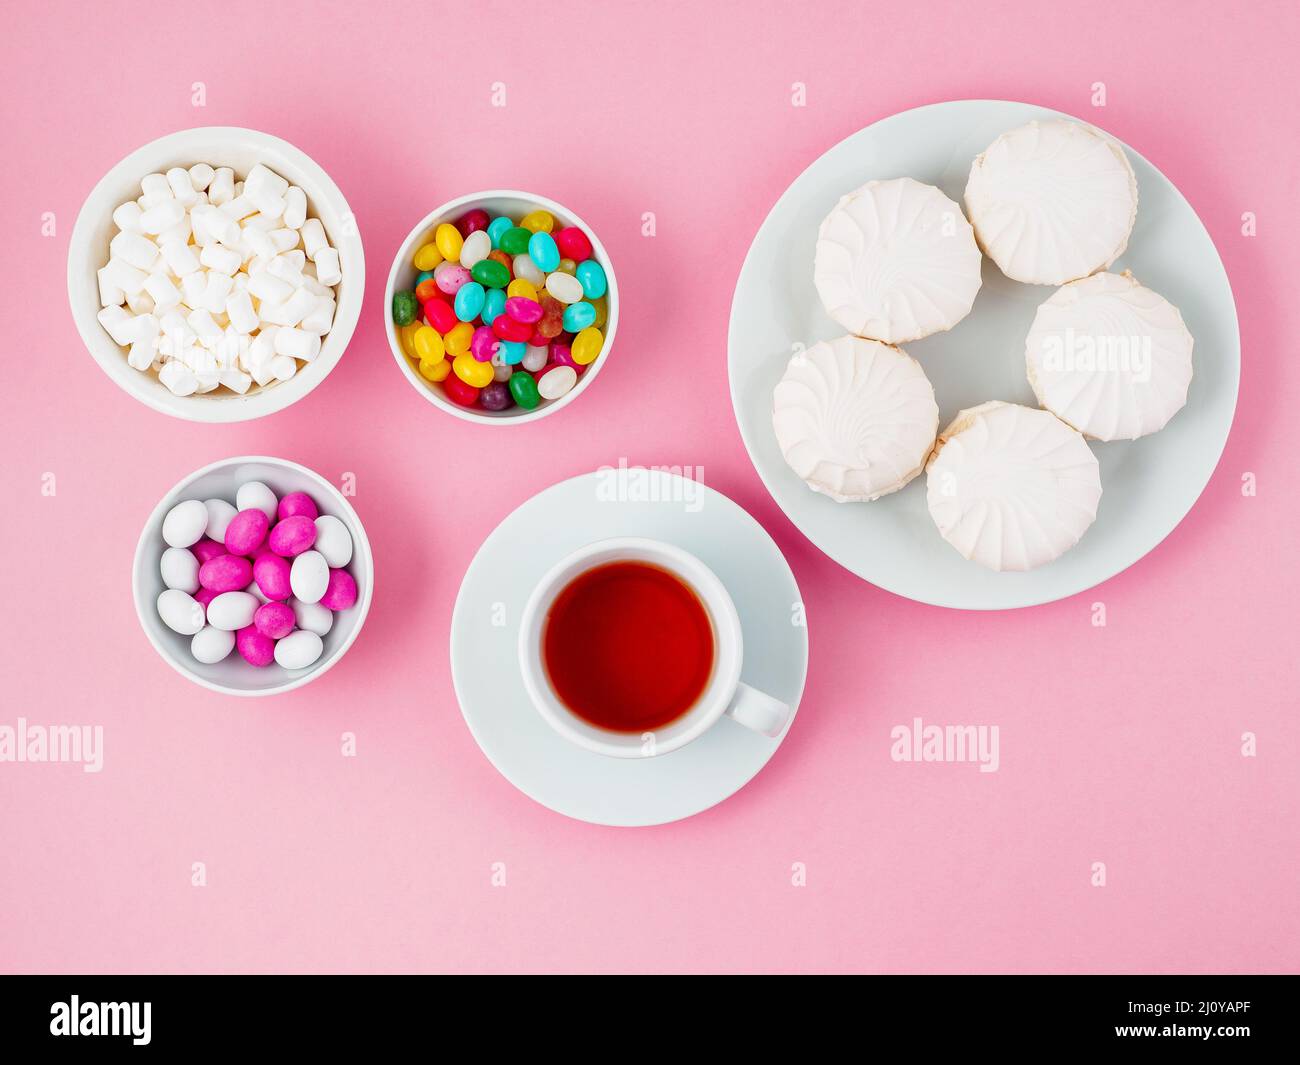 Tasse Tee, Teller mit verschiedenen Süßigkeiten-Marshallows, Lutscher, Süßigkeiten. Kohlenhydrate, Glukose. Rosafarbener Hintergrund, flach liegend. Stockfoto